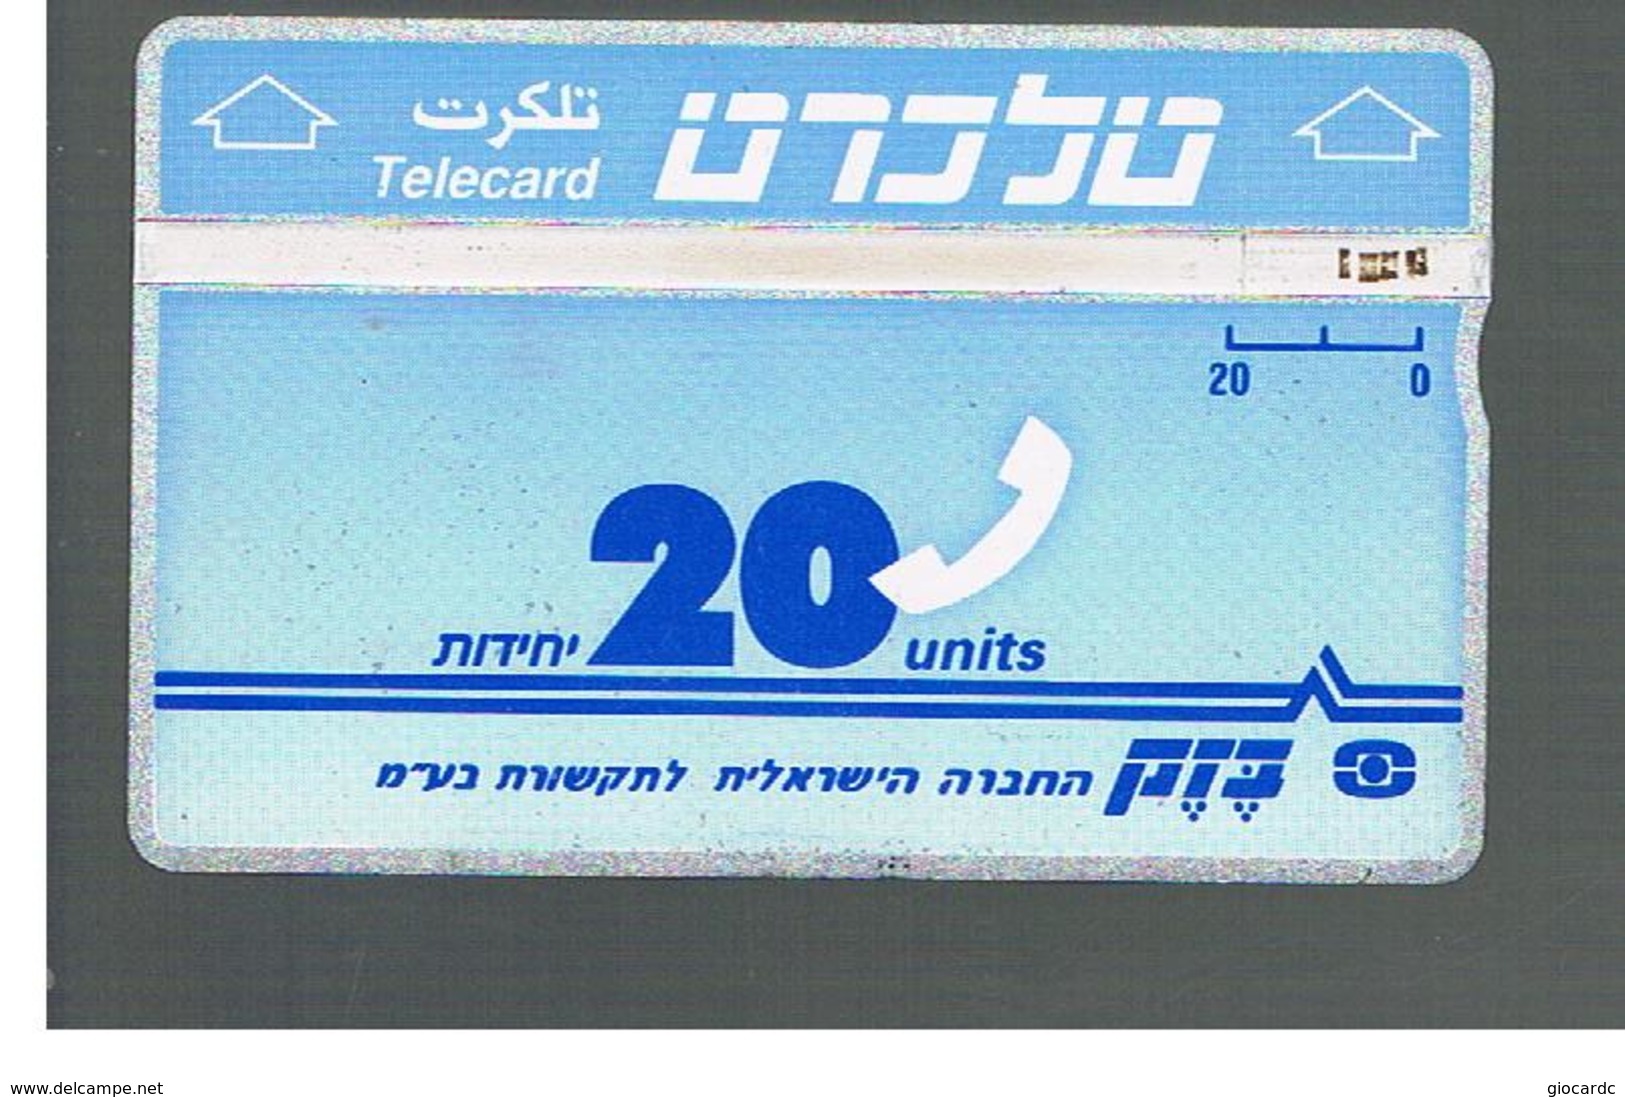 ISRAELE (ISRAEL) -   1990 TELECARD 20 - USED  -  RIF. 10873 - Israele